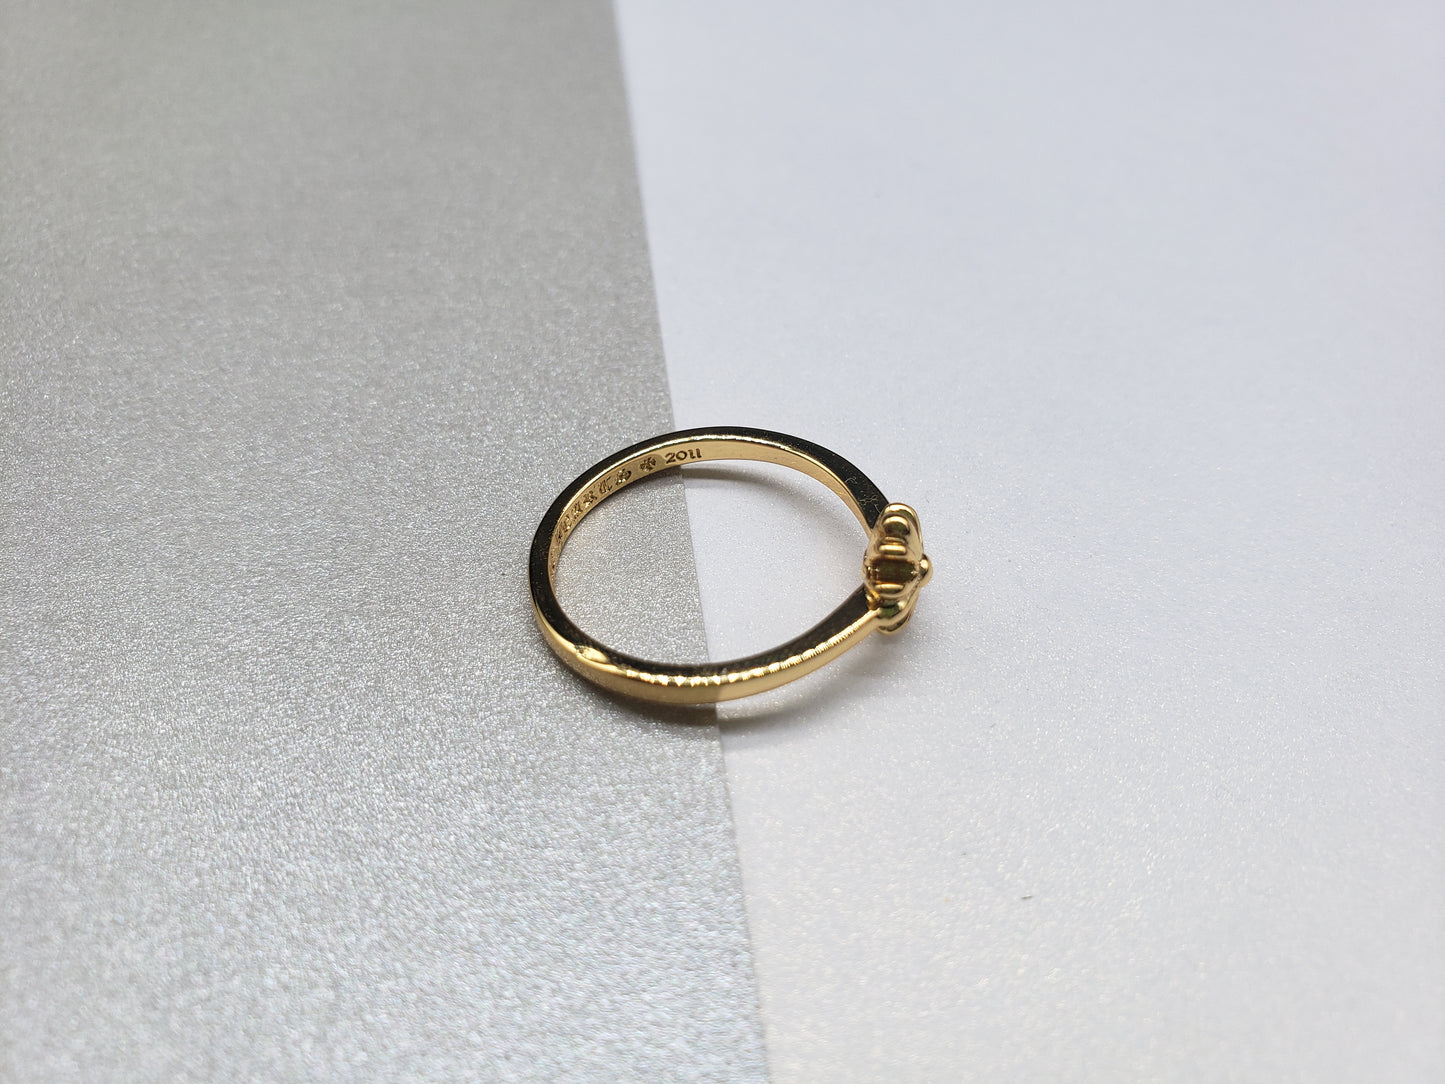 Chrome Gold Flower Retro Ring, Women Style Rings